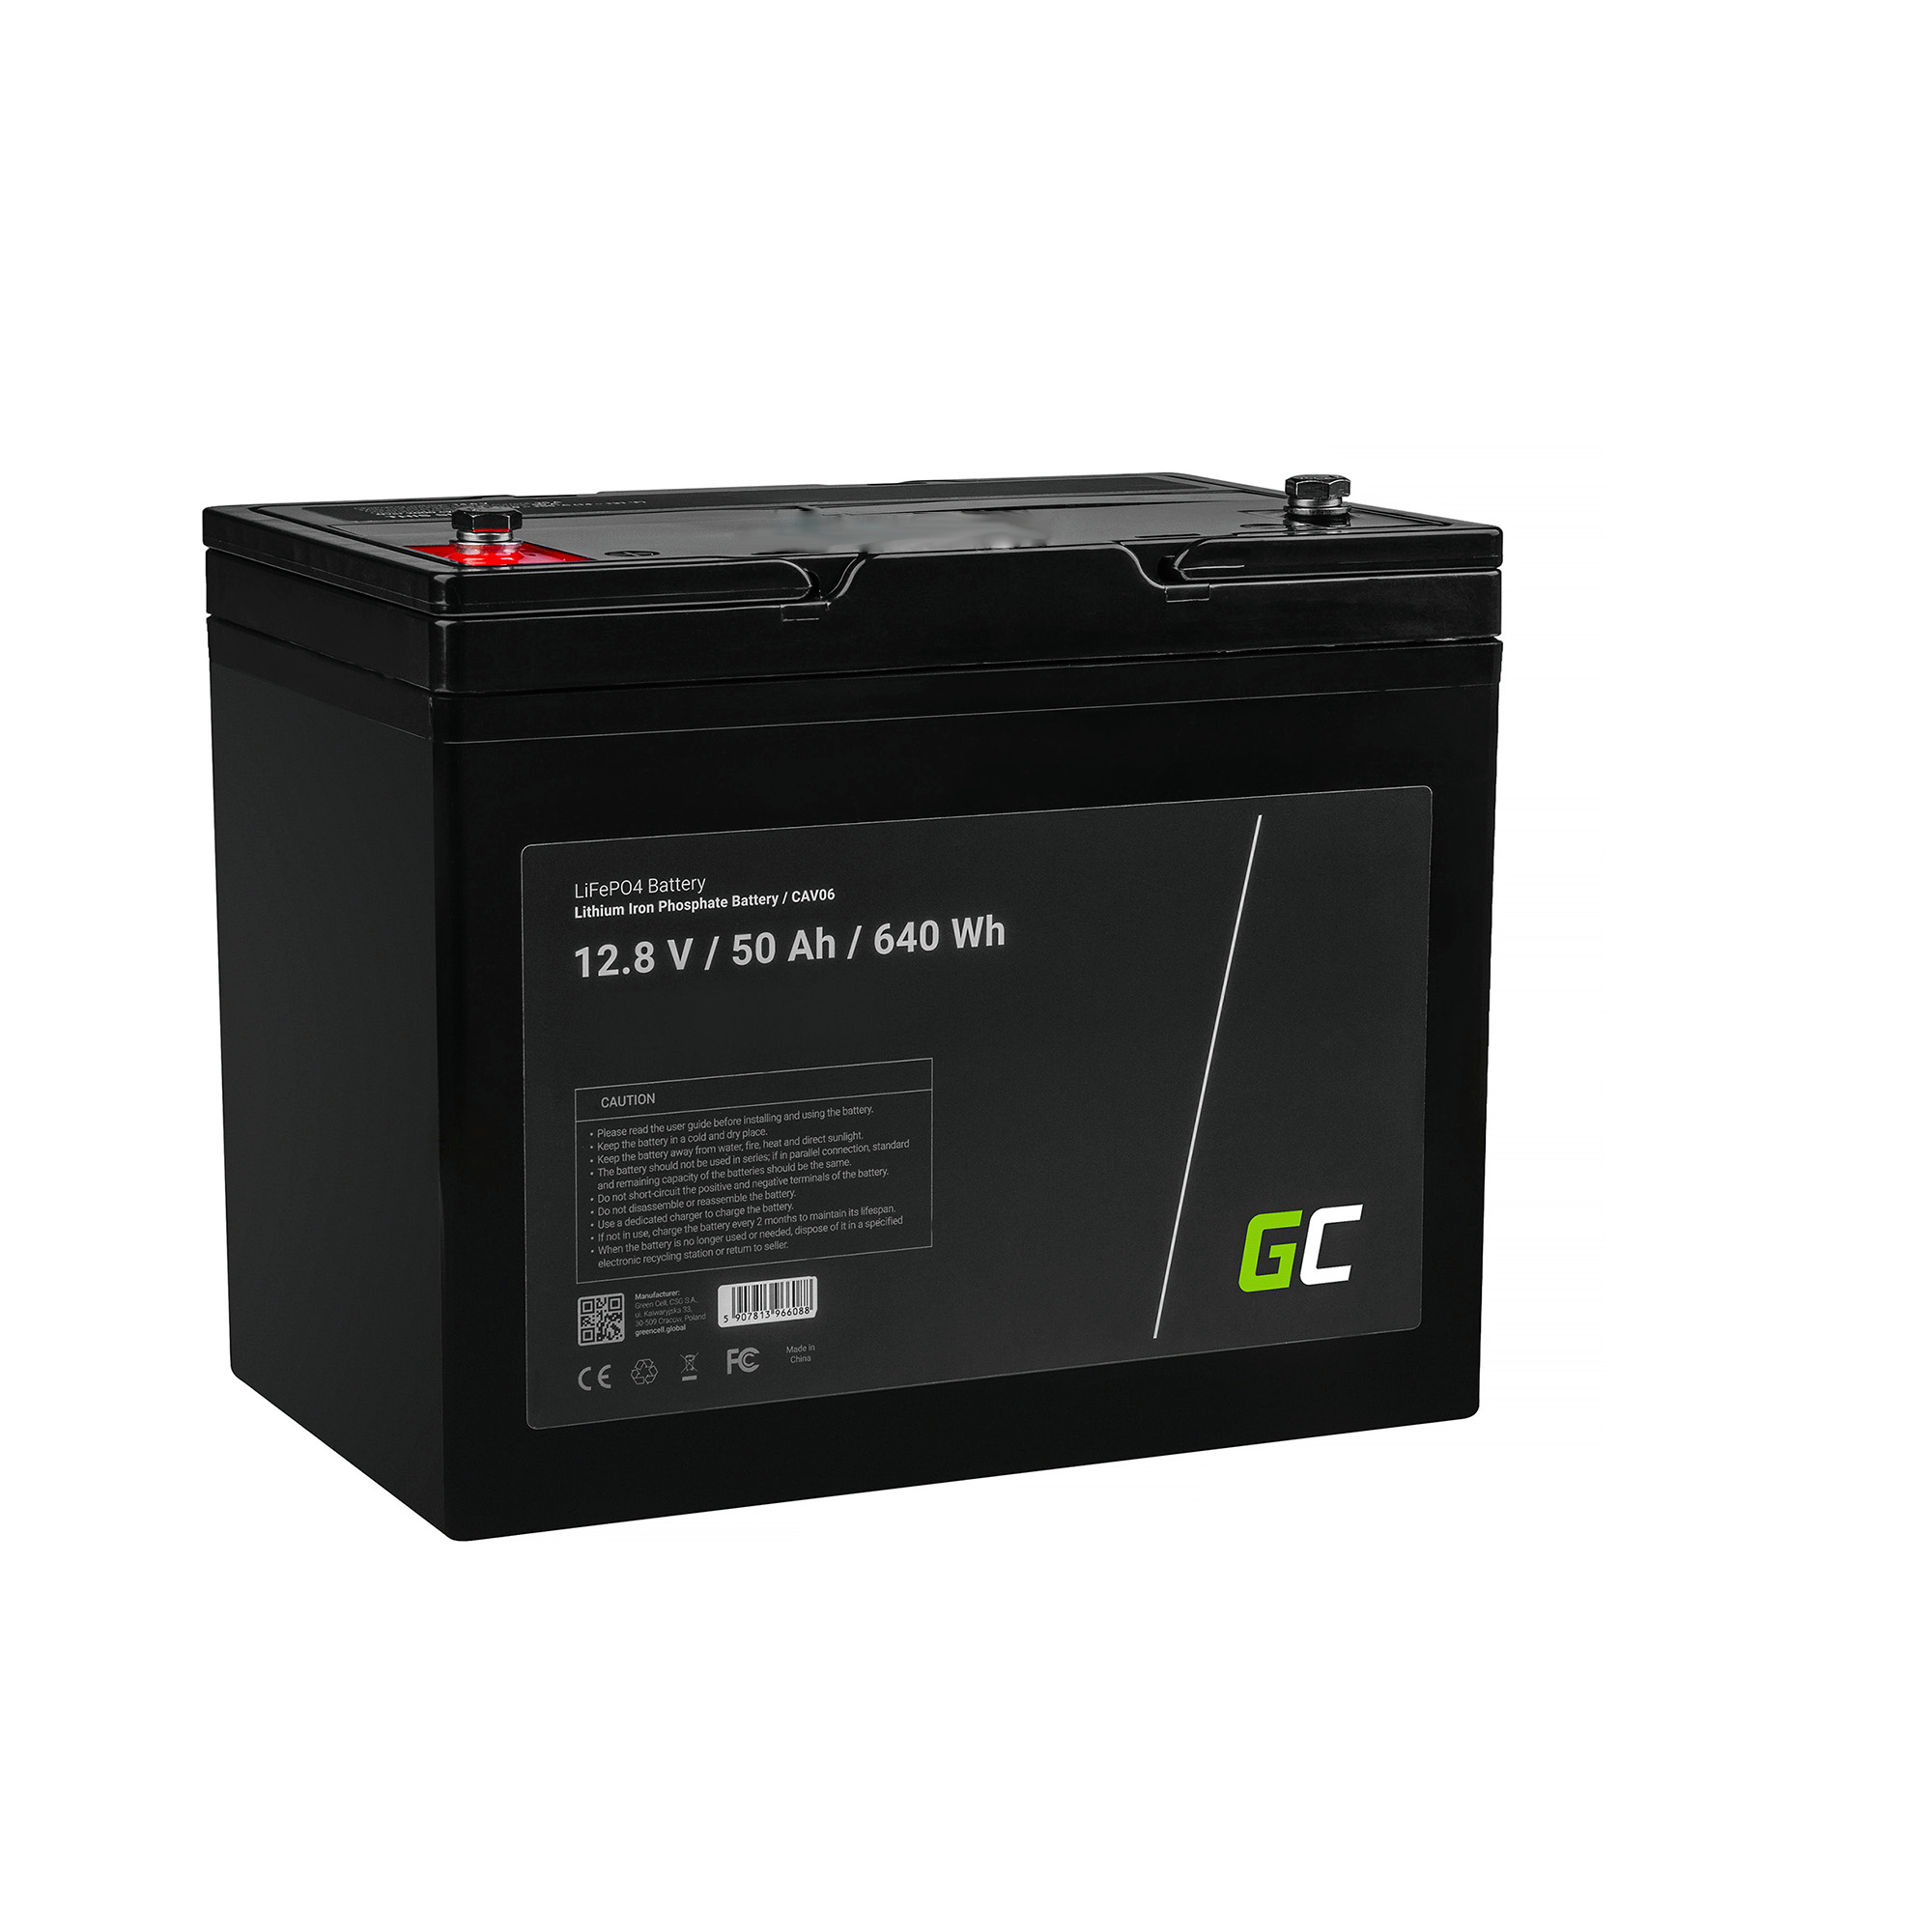 Baterie Green Cell Lithium-železo-fosfátová LiFePO4 baterie 12V, 12,8V 50Ah pro solární panely, obytné automobily a lodě